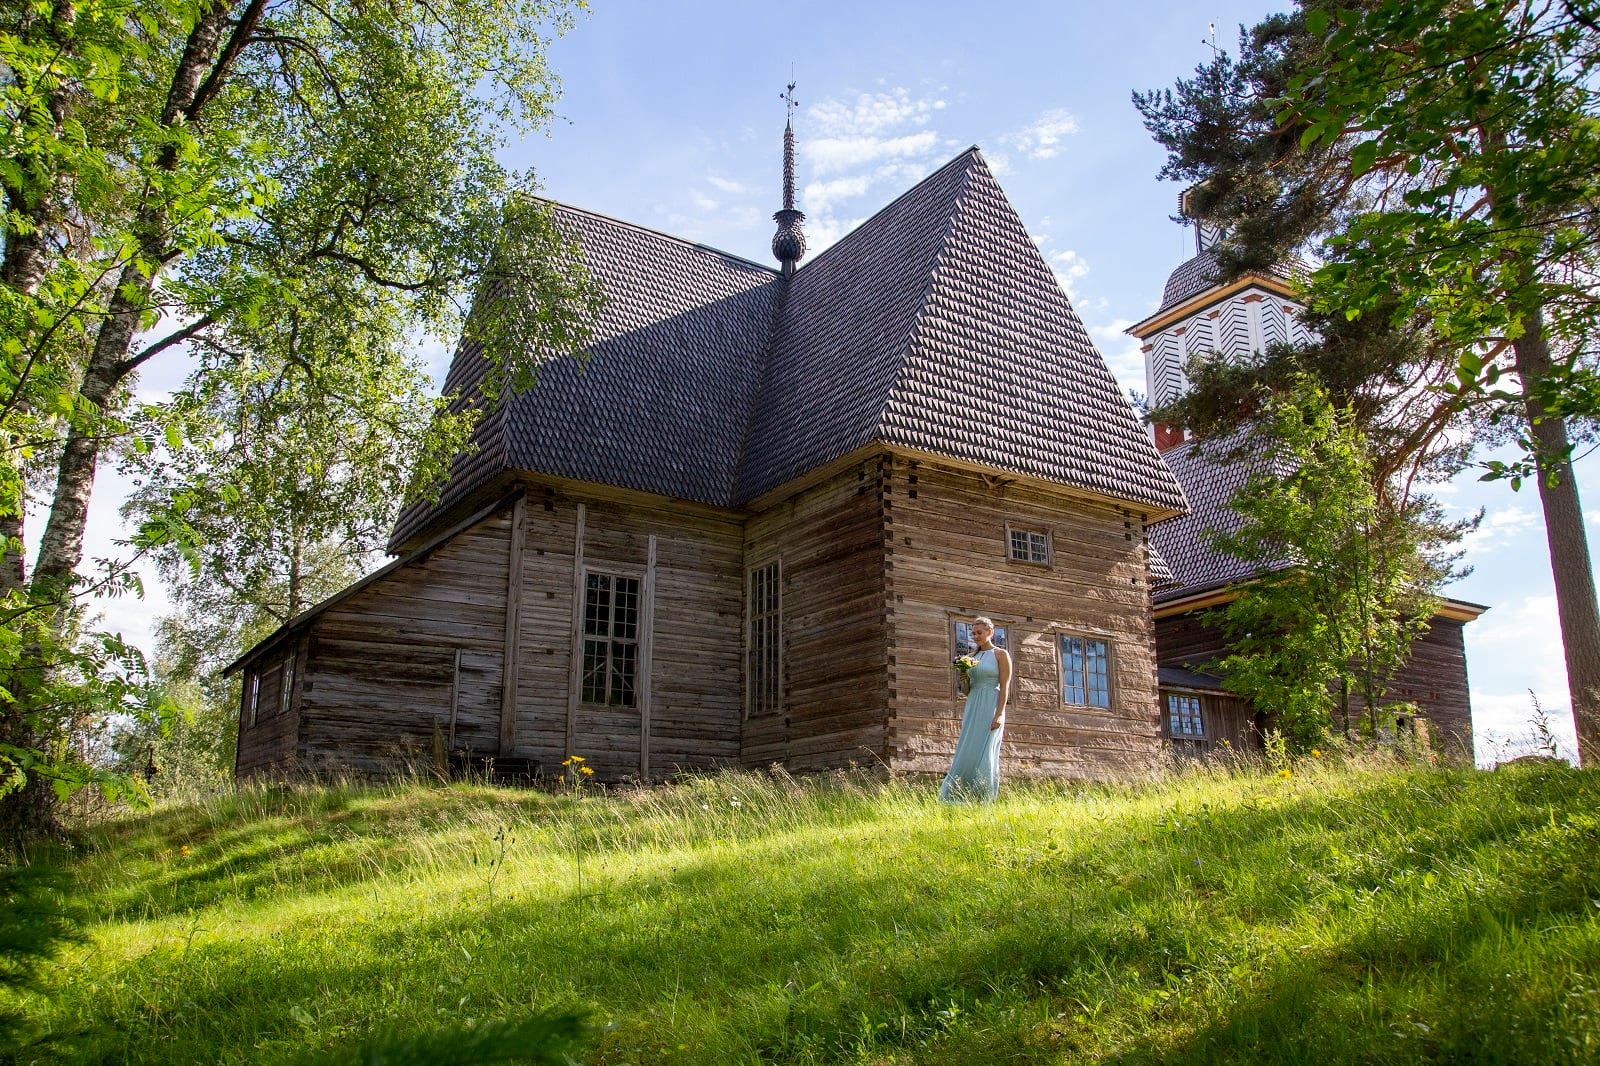 The Old Church of Petäjävesi